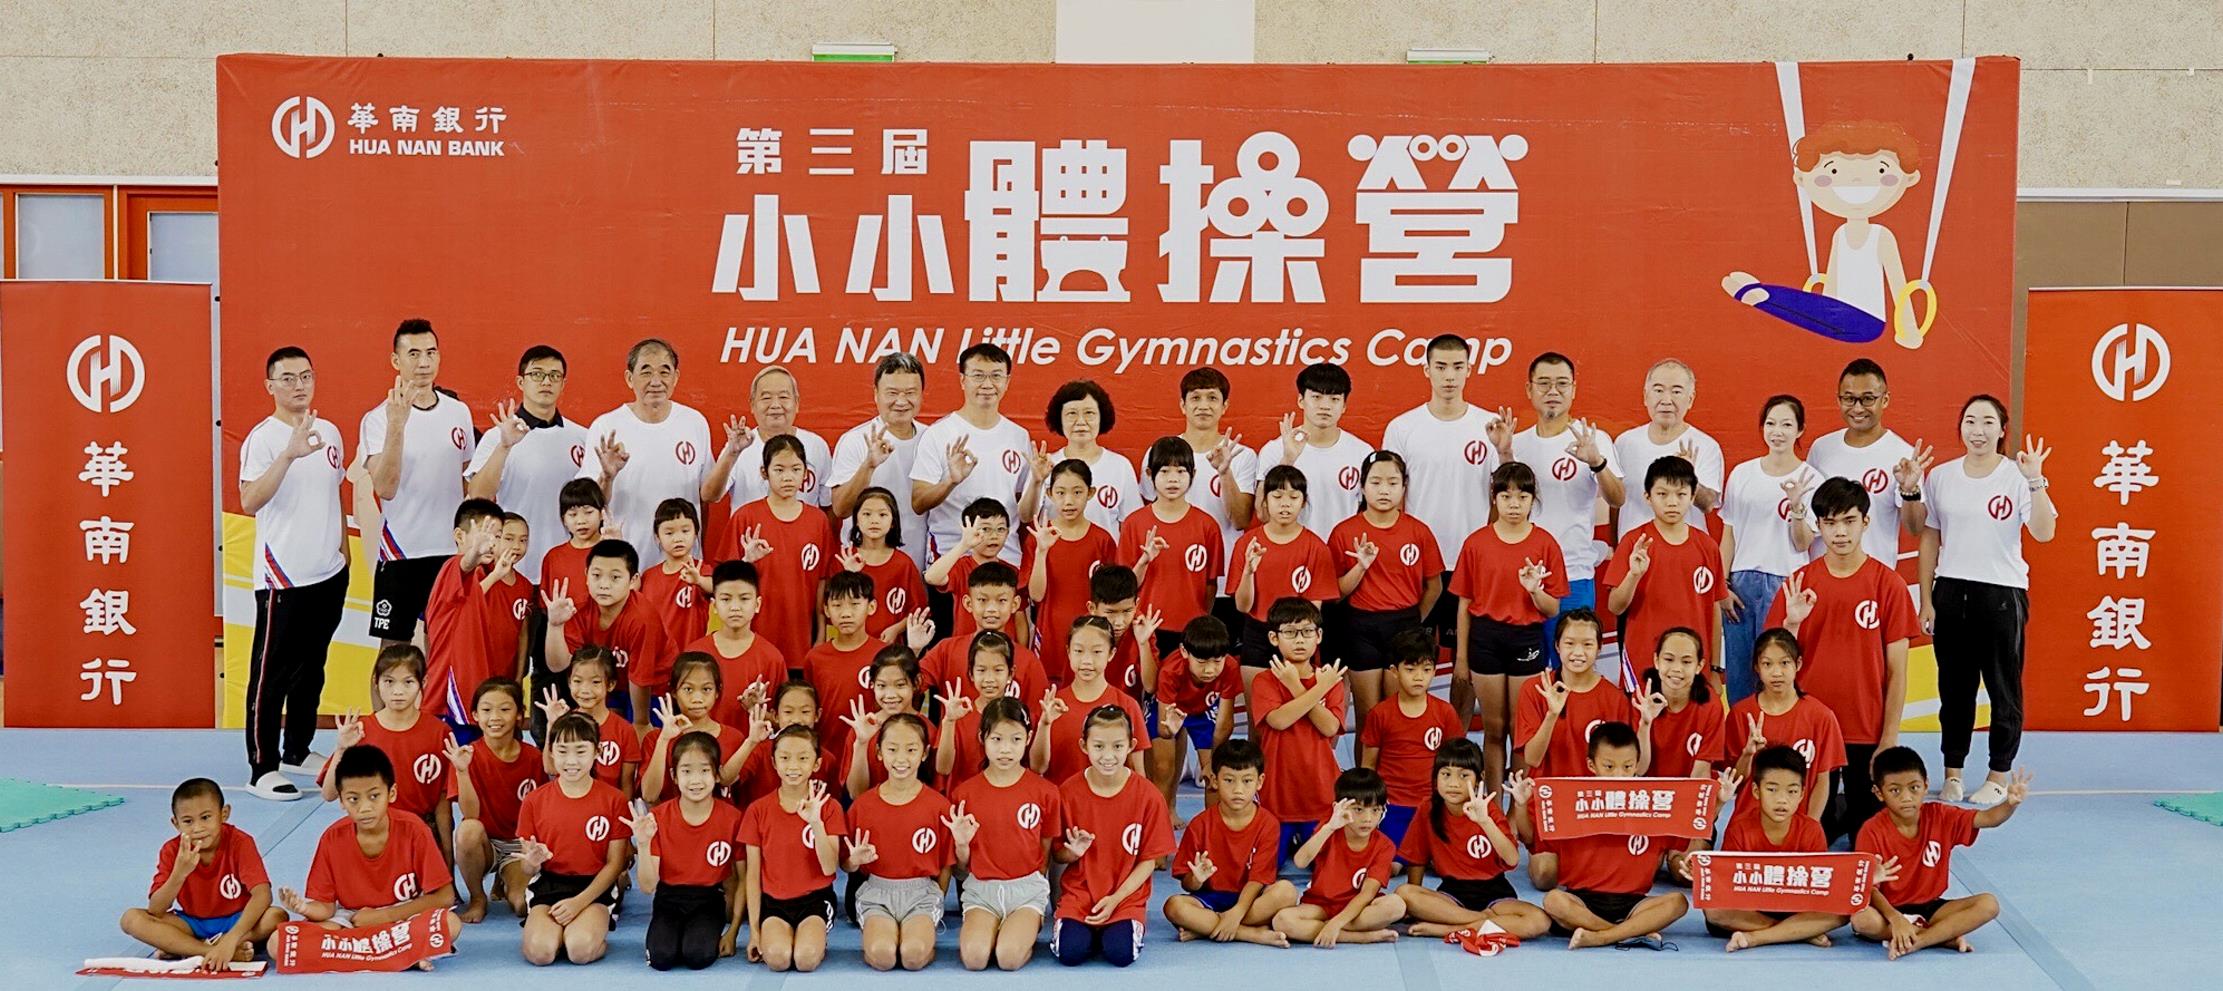 華南銀行主辦的「第三屆小小體操營」大合照。高雄運發局提供